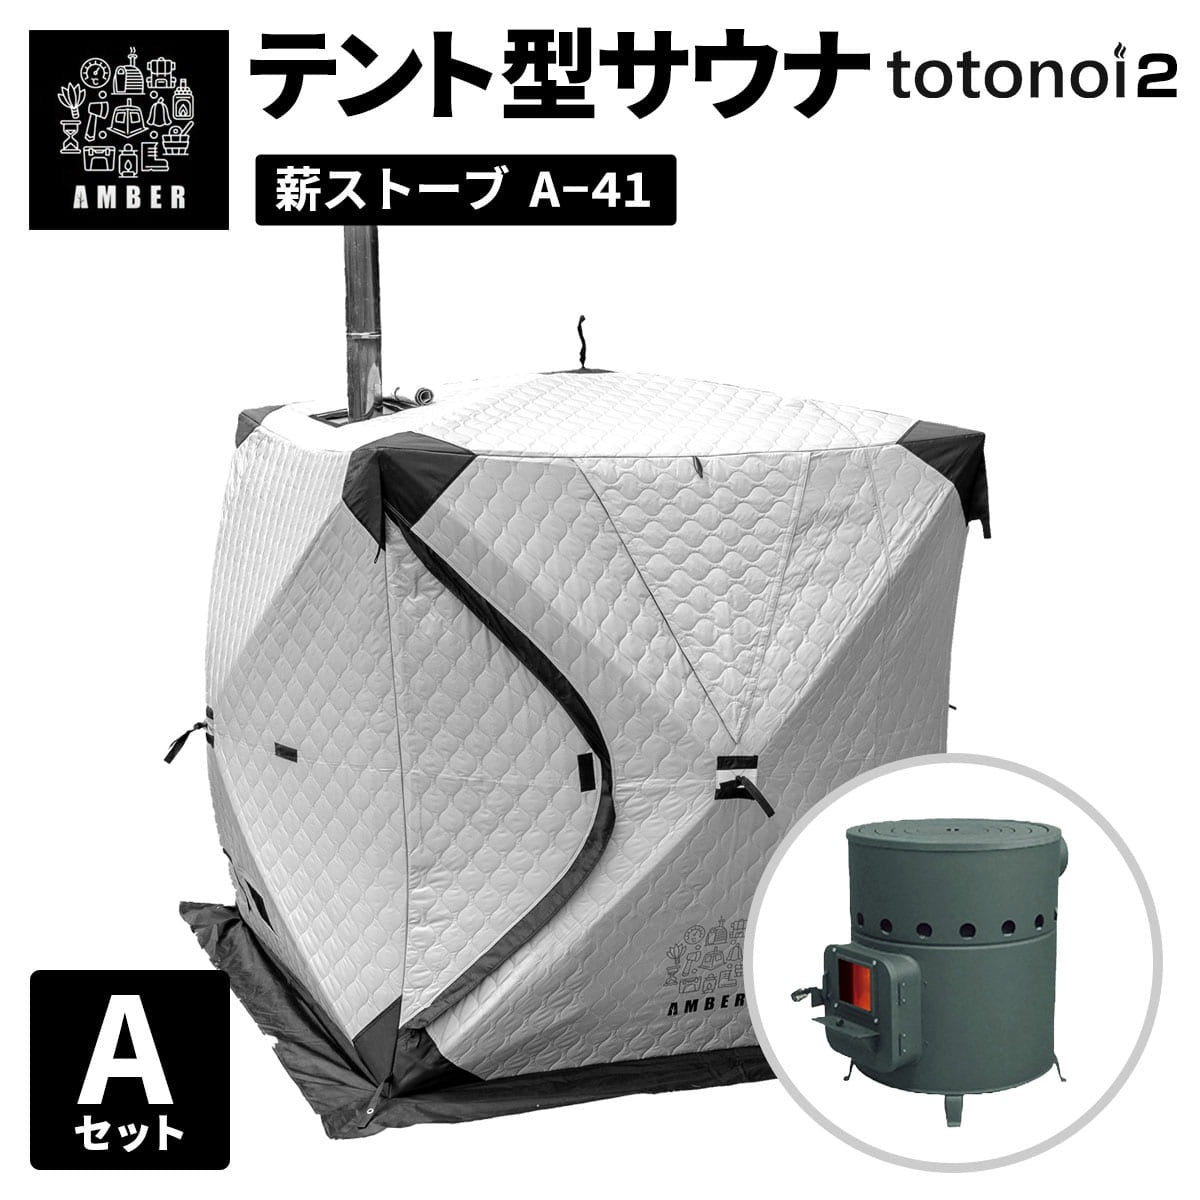 AMBER テント型サウナ totonoi2 (Aセット)ストーブコンロセット A-41【ホンマ製作所製】  ｜家庭用サウナ・テントサウナ通販のidetox（アイデトックス）